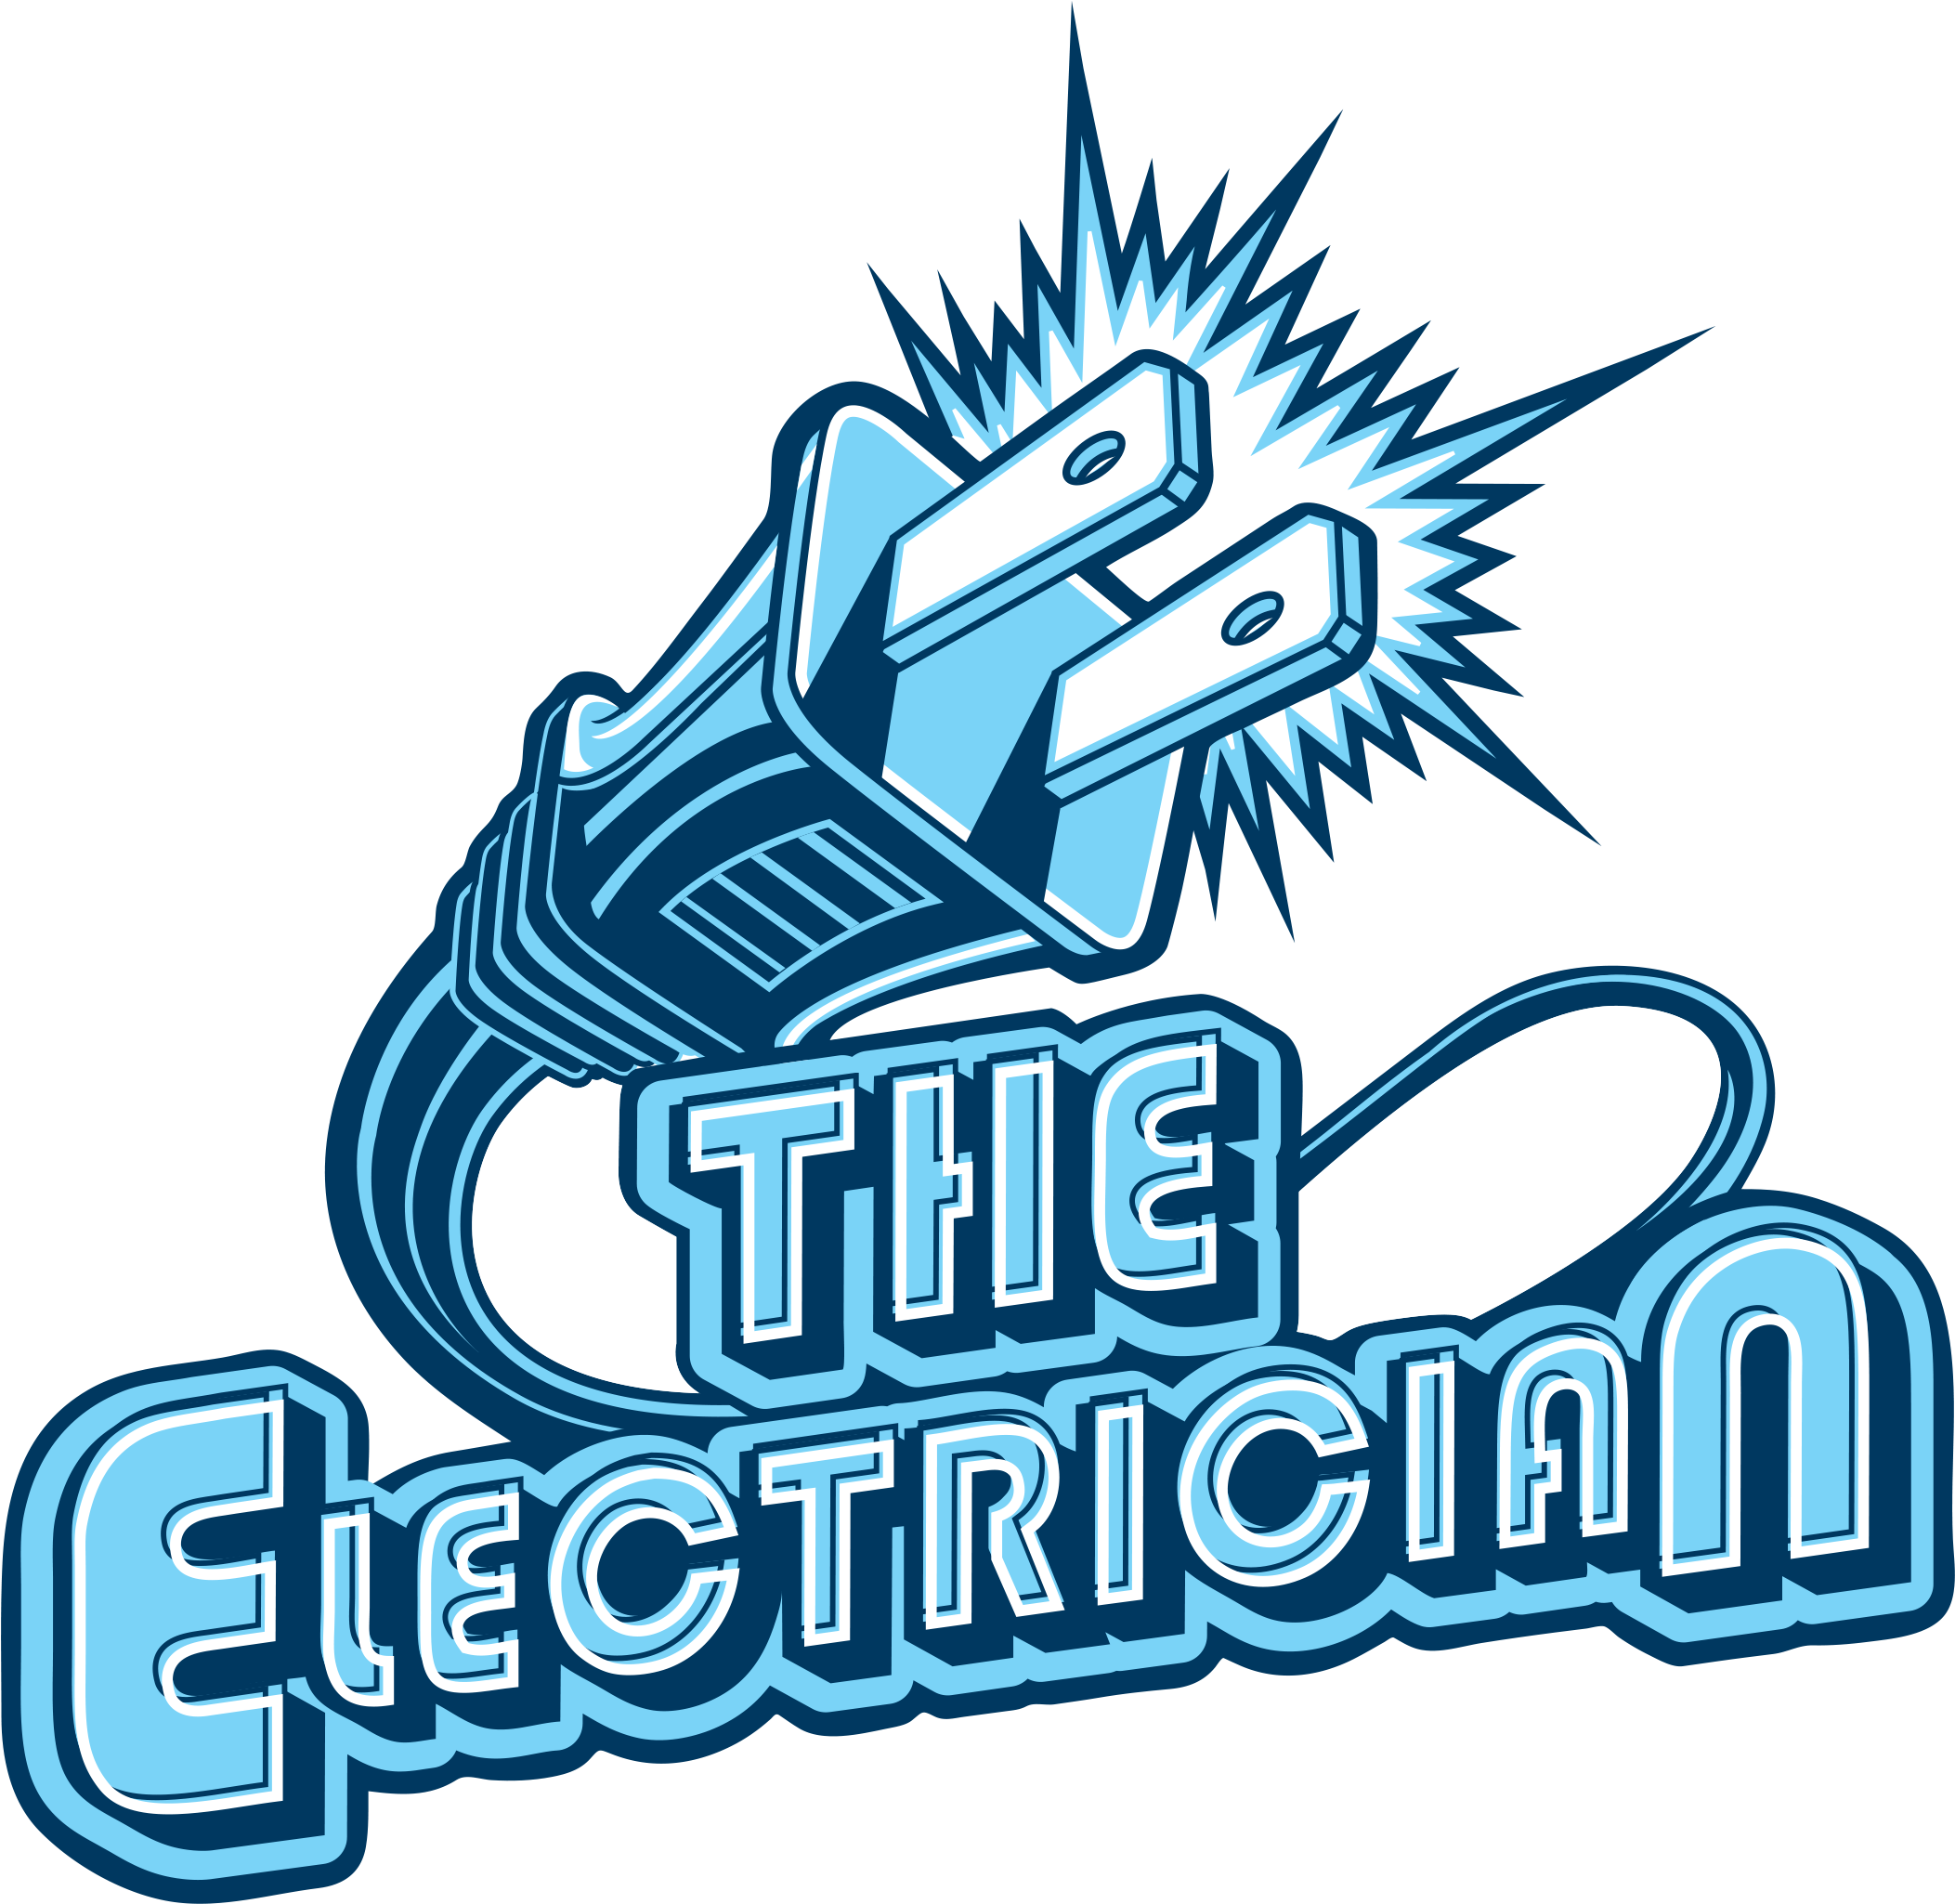 electrician logo ideas 3